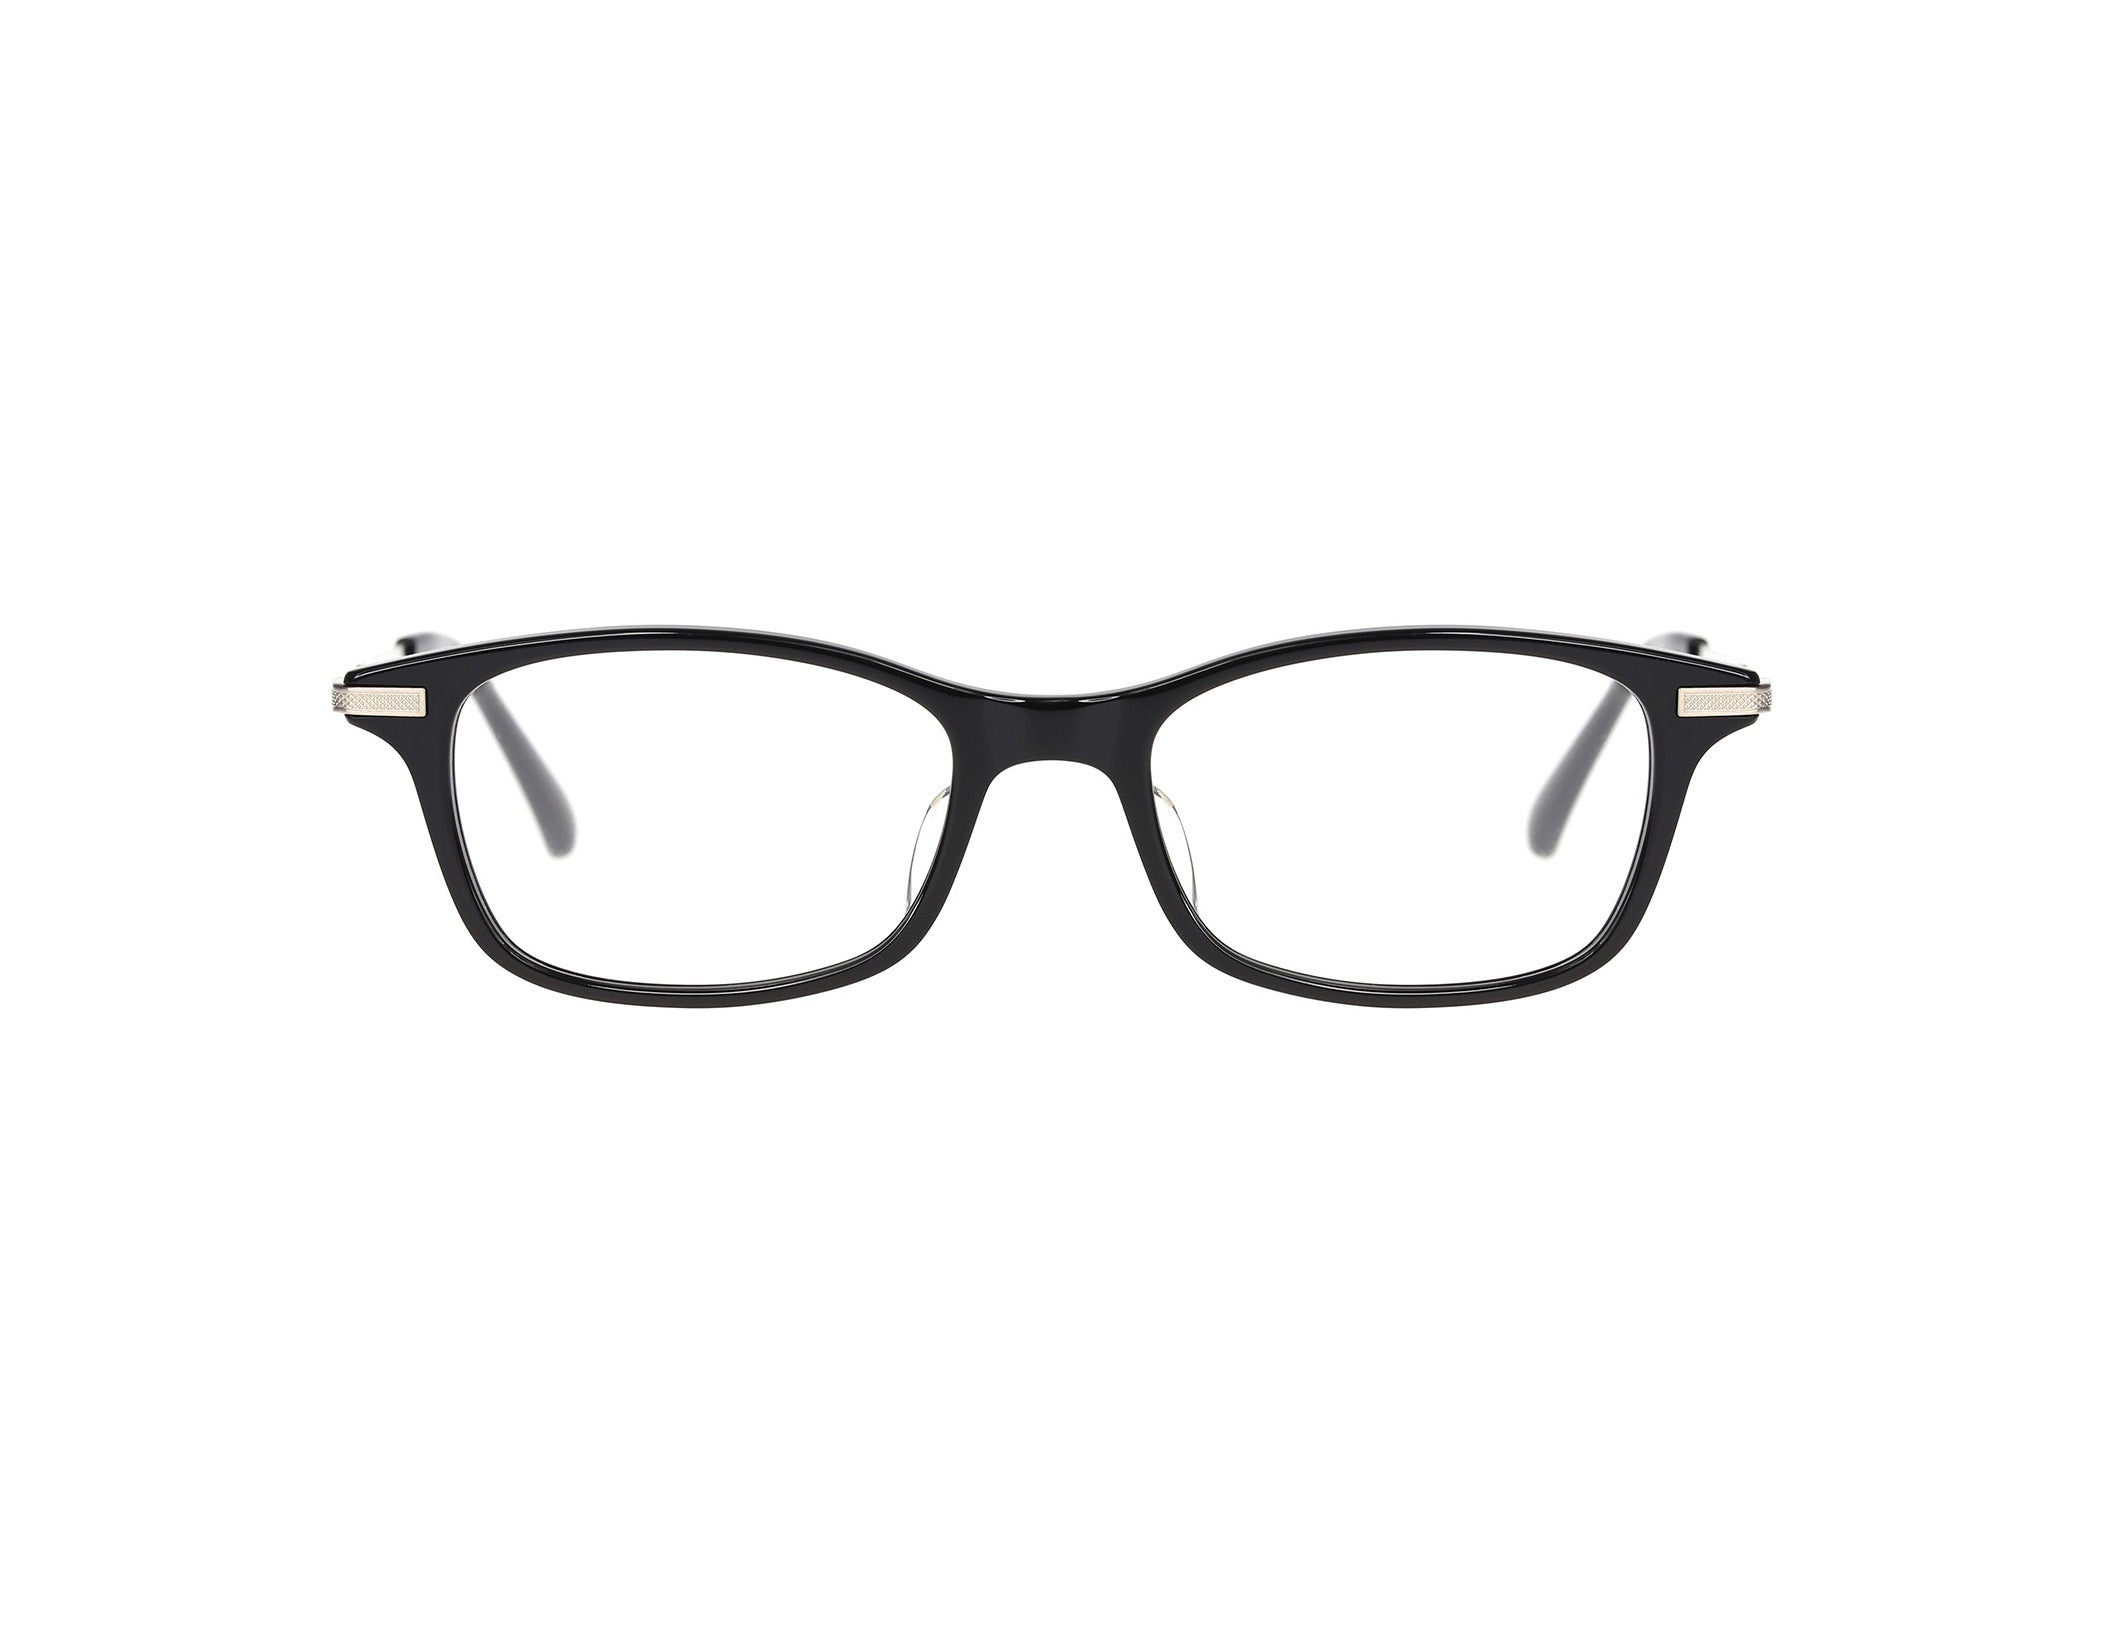 Oh My Glasses - Edward omg-052-1